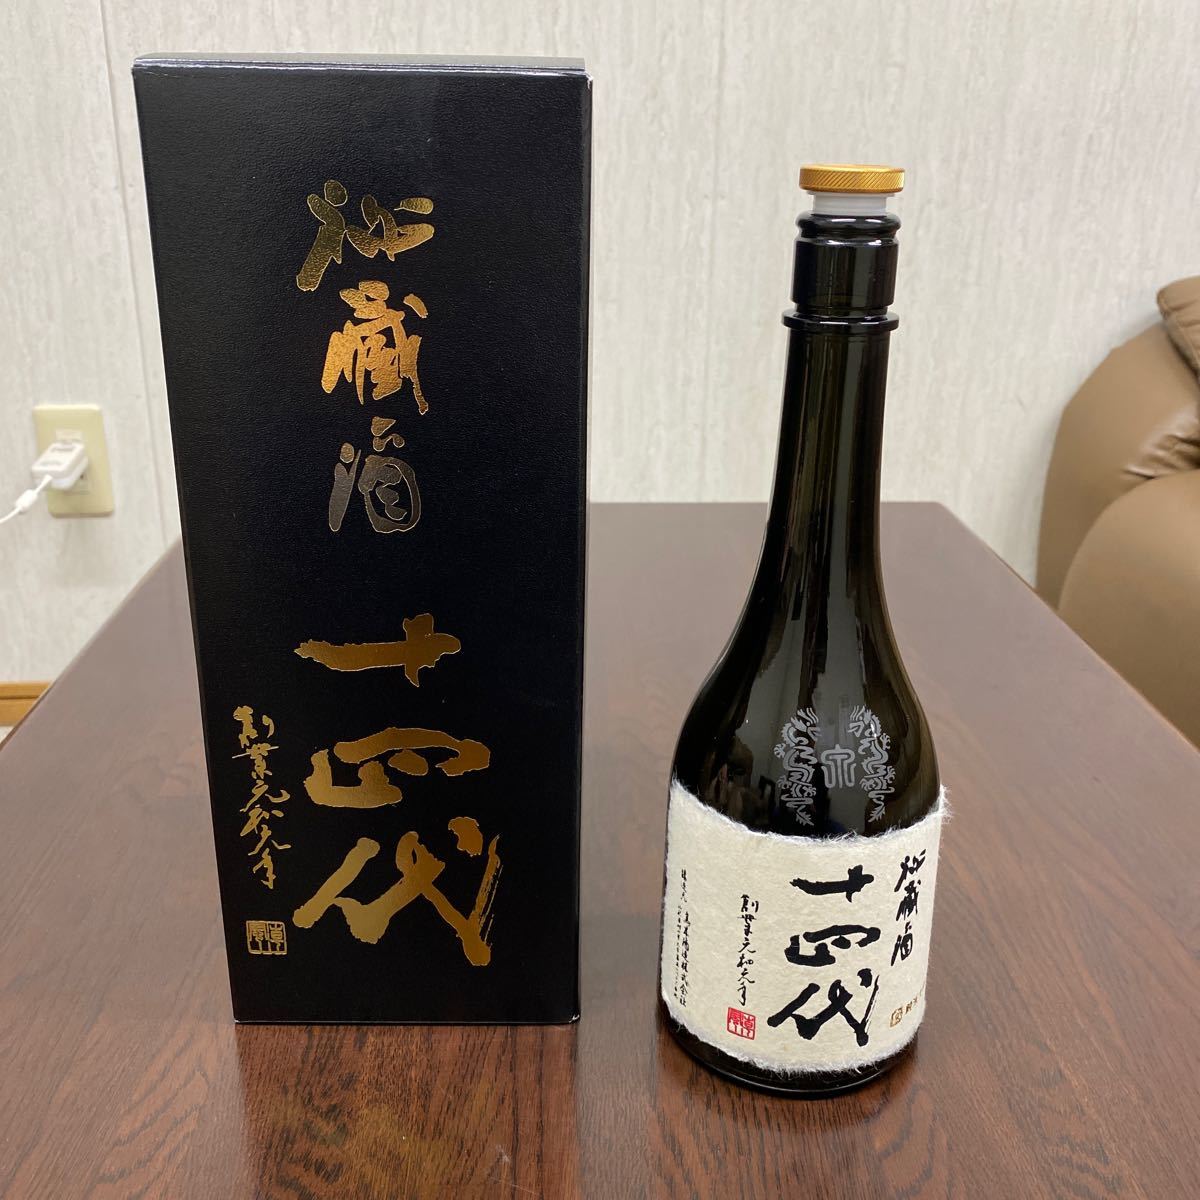 十四代空瓶720ml 秘蔵酒空瓶 純米大吟醸酒(古酒)空瓶 高木酒造の画像1